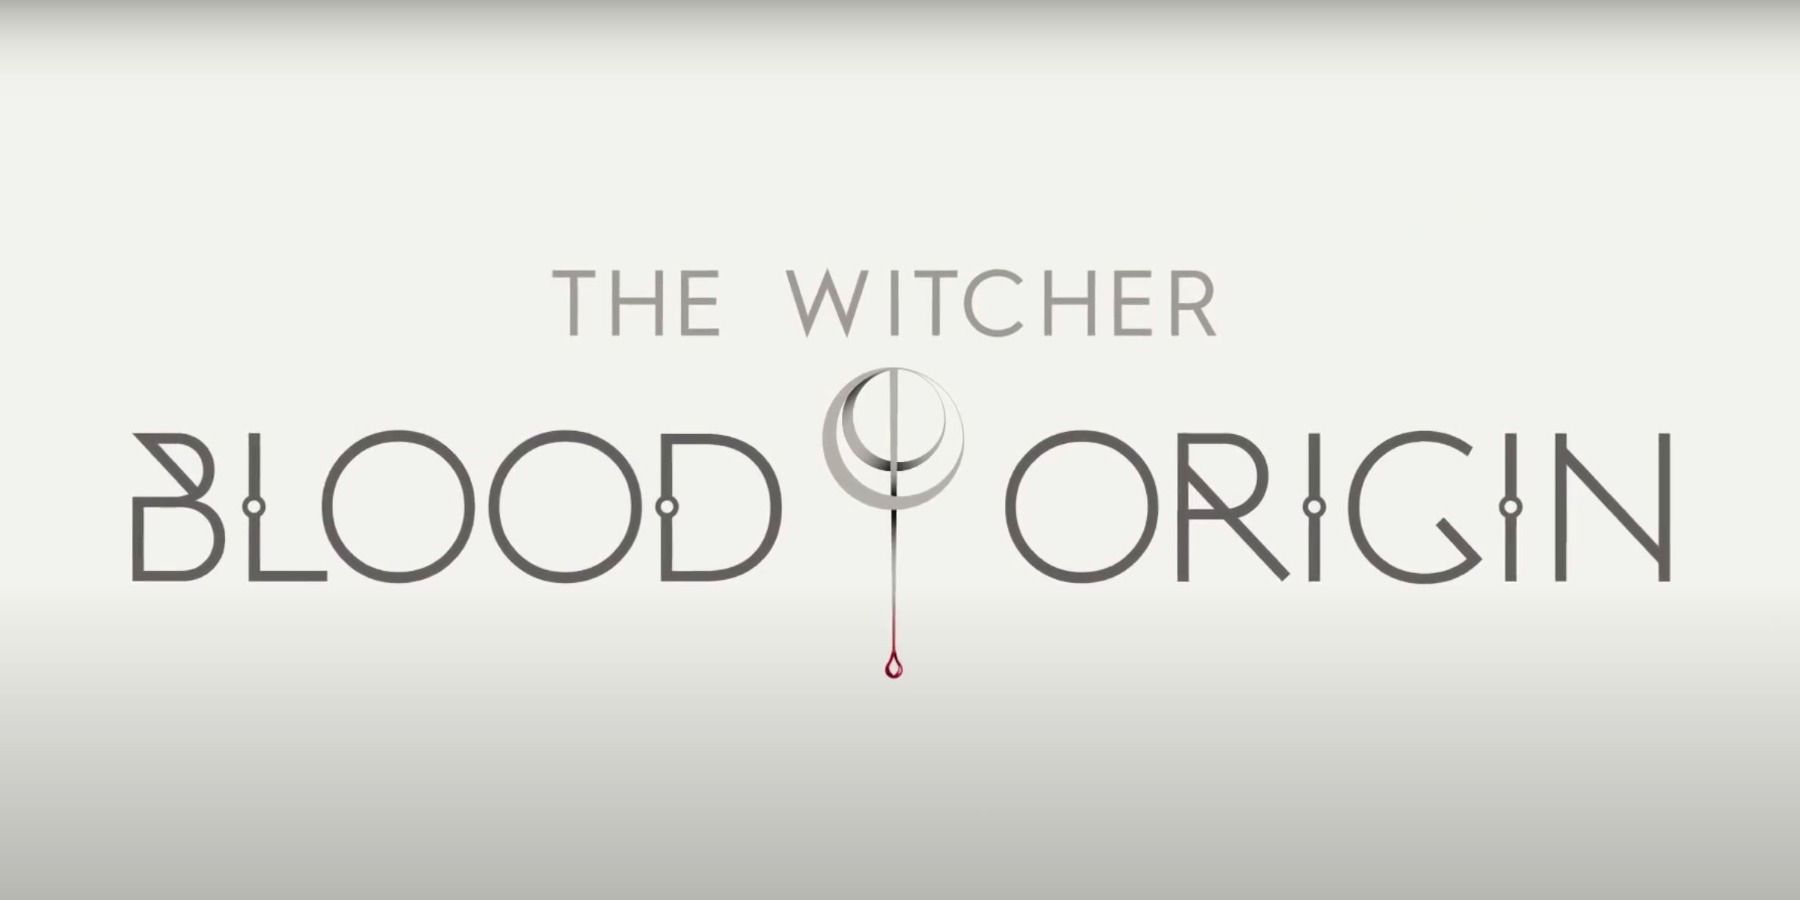 The Witcher: Blood Origin giver BTS se på Netflix’s prequel -serie